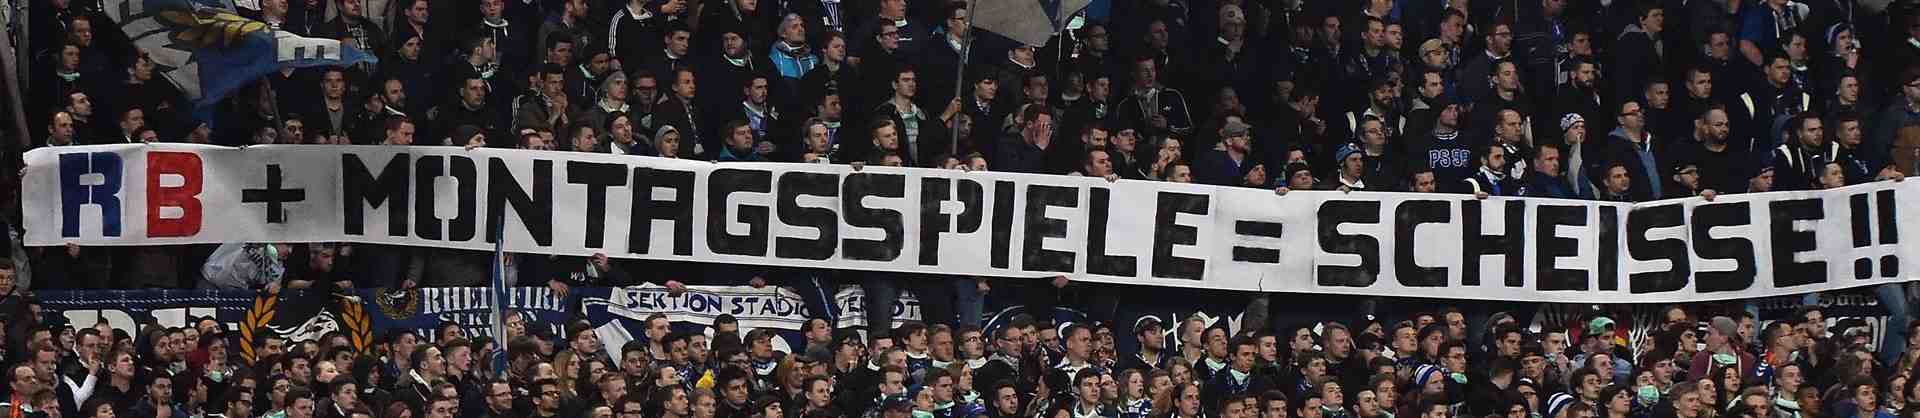 Platz 2 der besten Proteste gegen Montagsspiele: Nürnberg-Fans protestieren gegen Montagsspiele